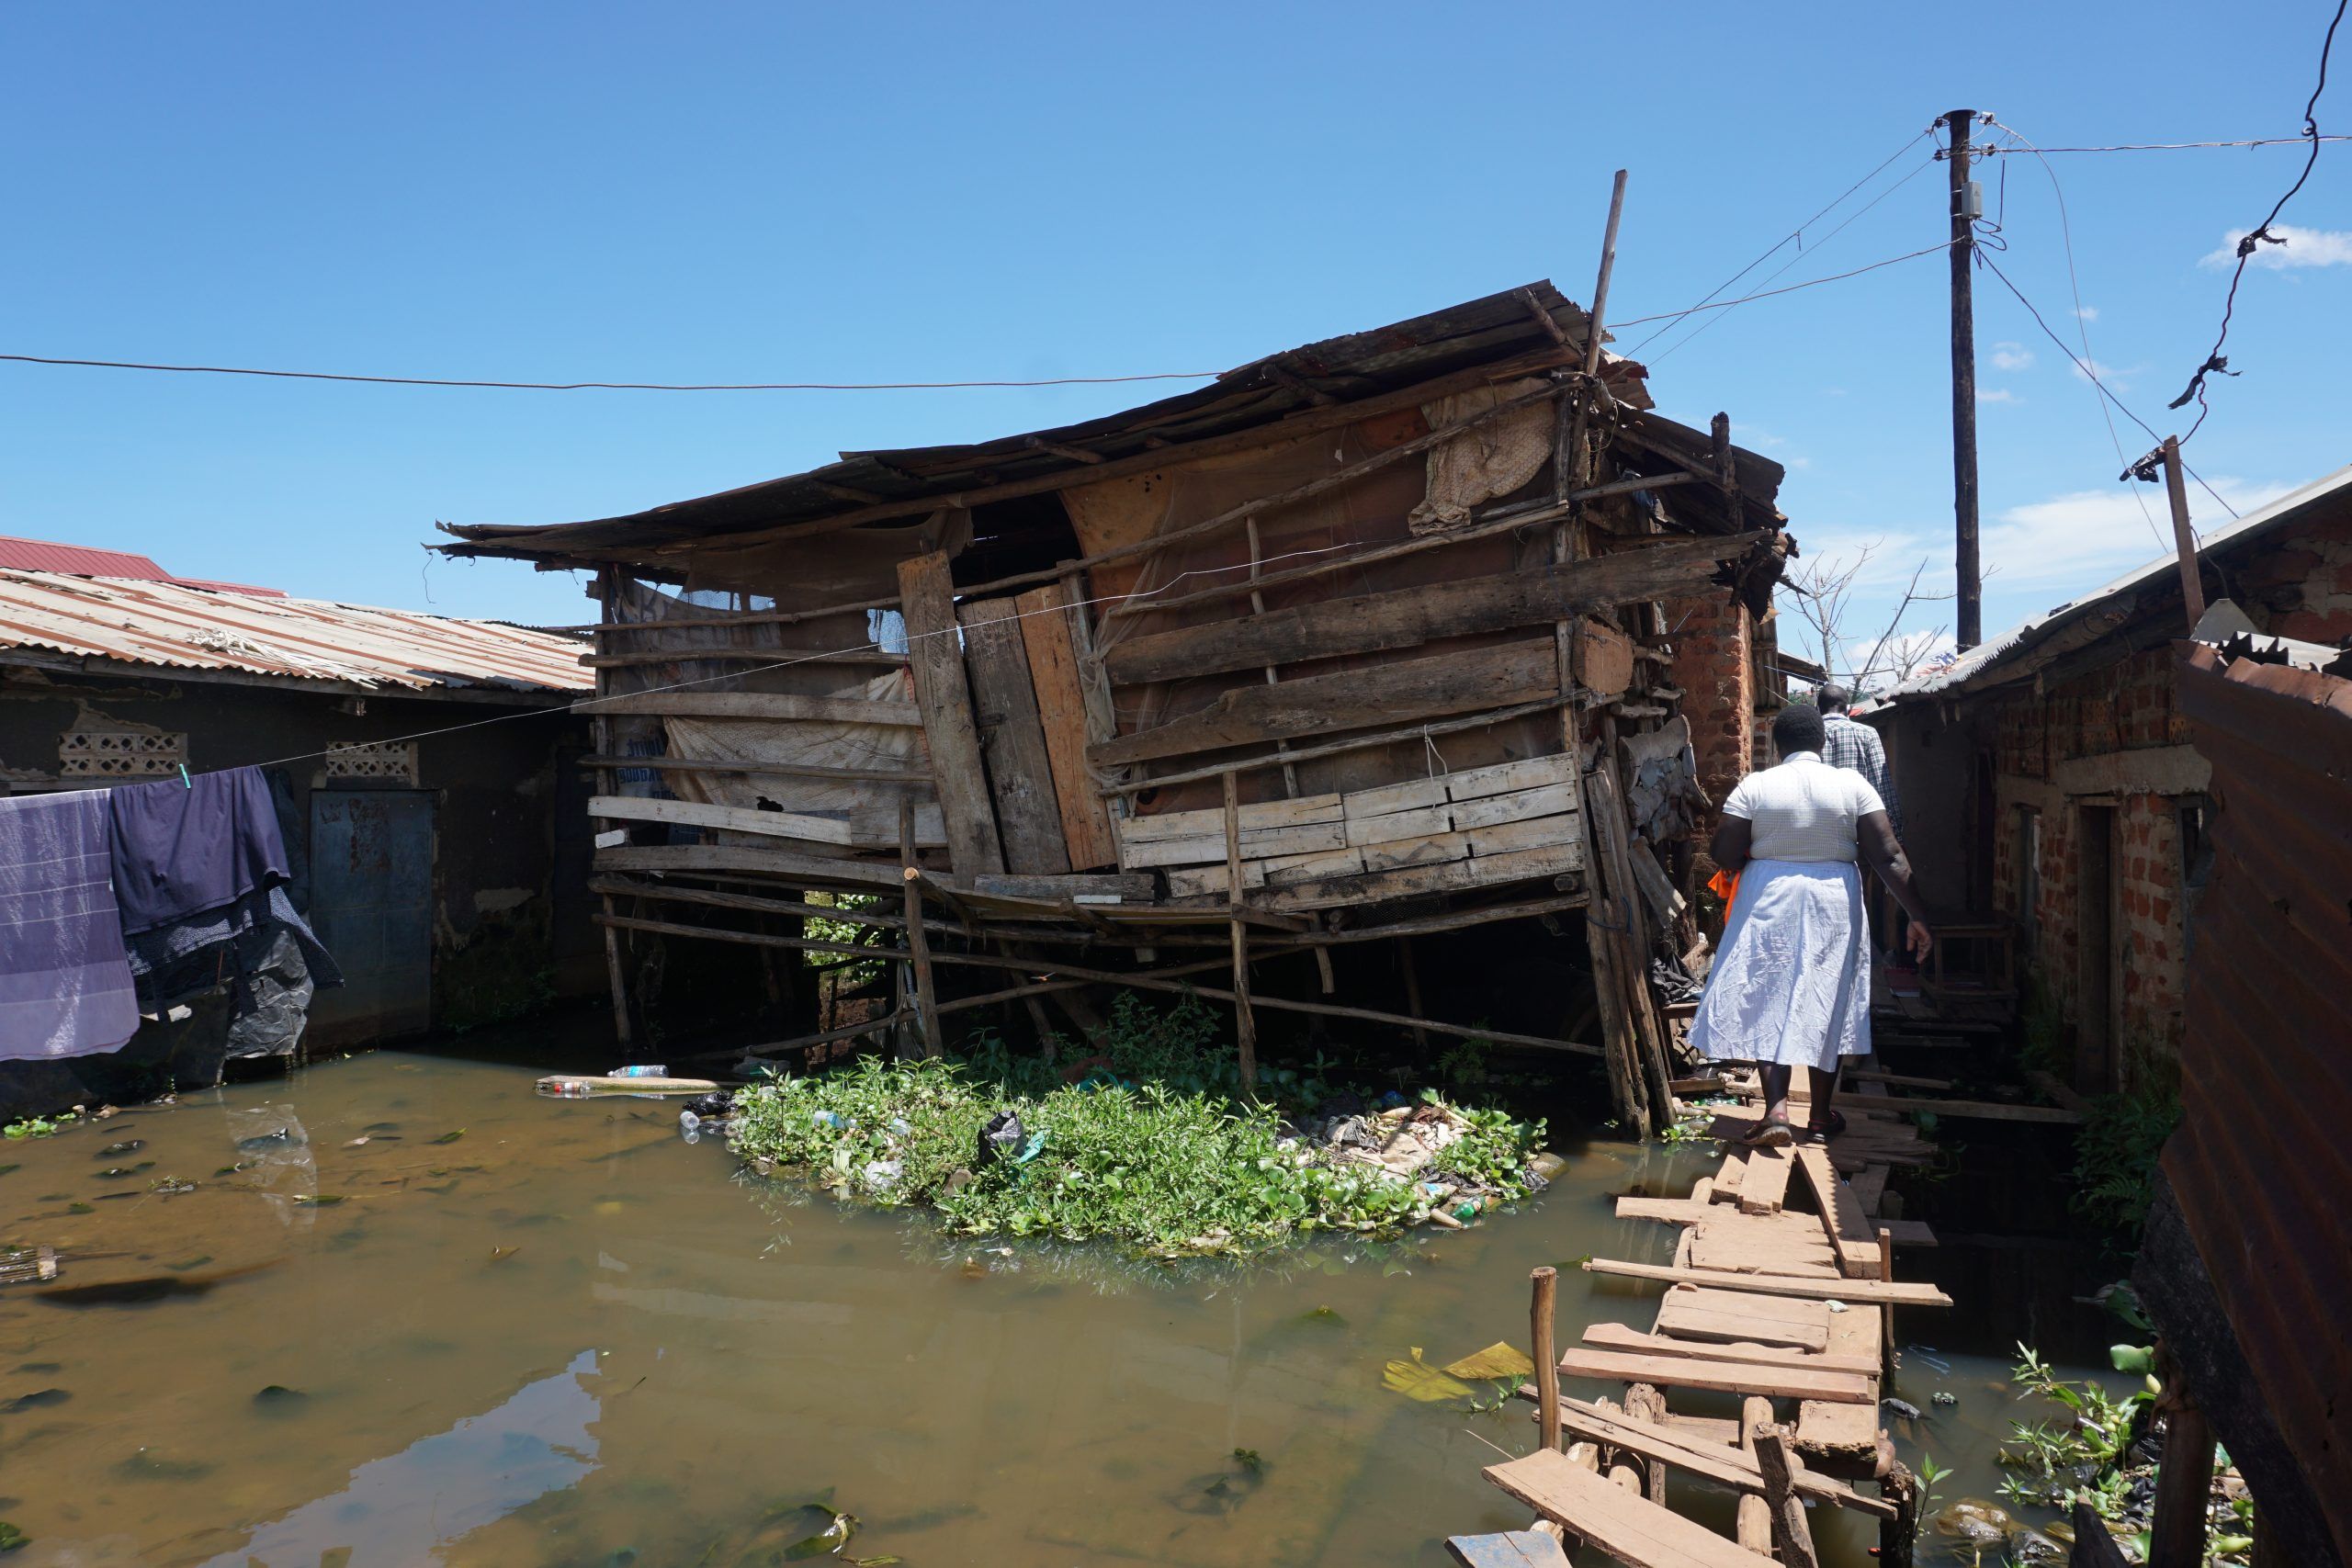 flooding in informal settlement